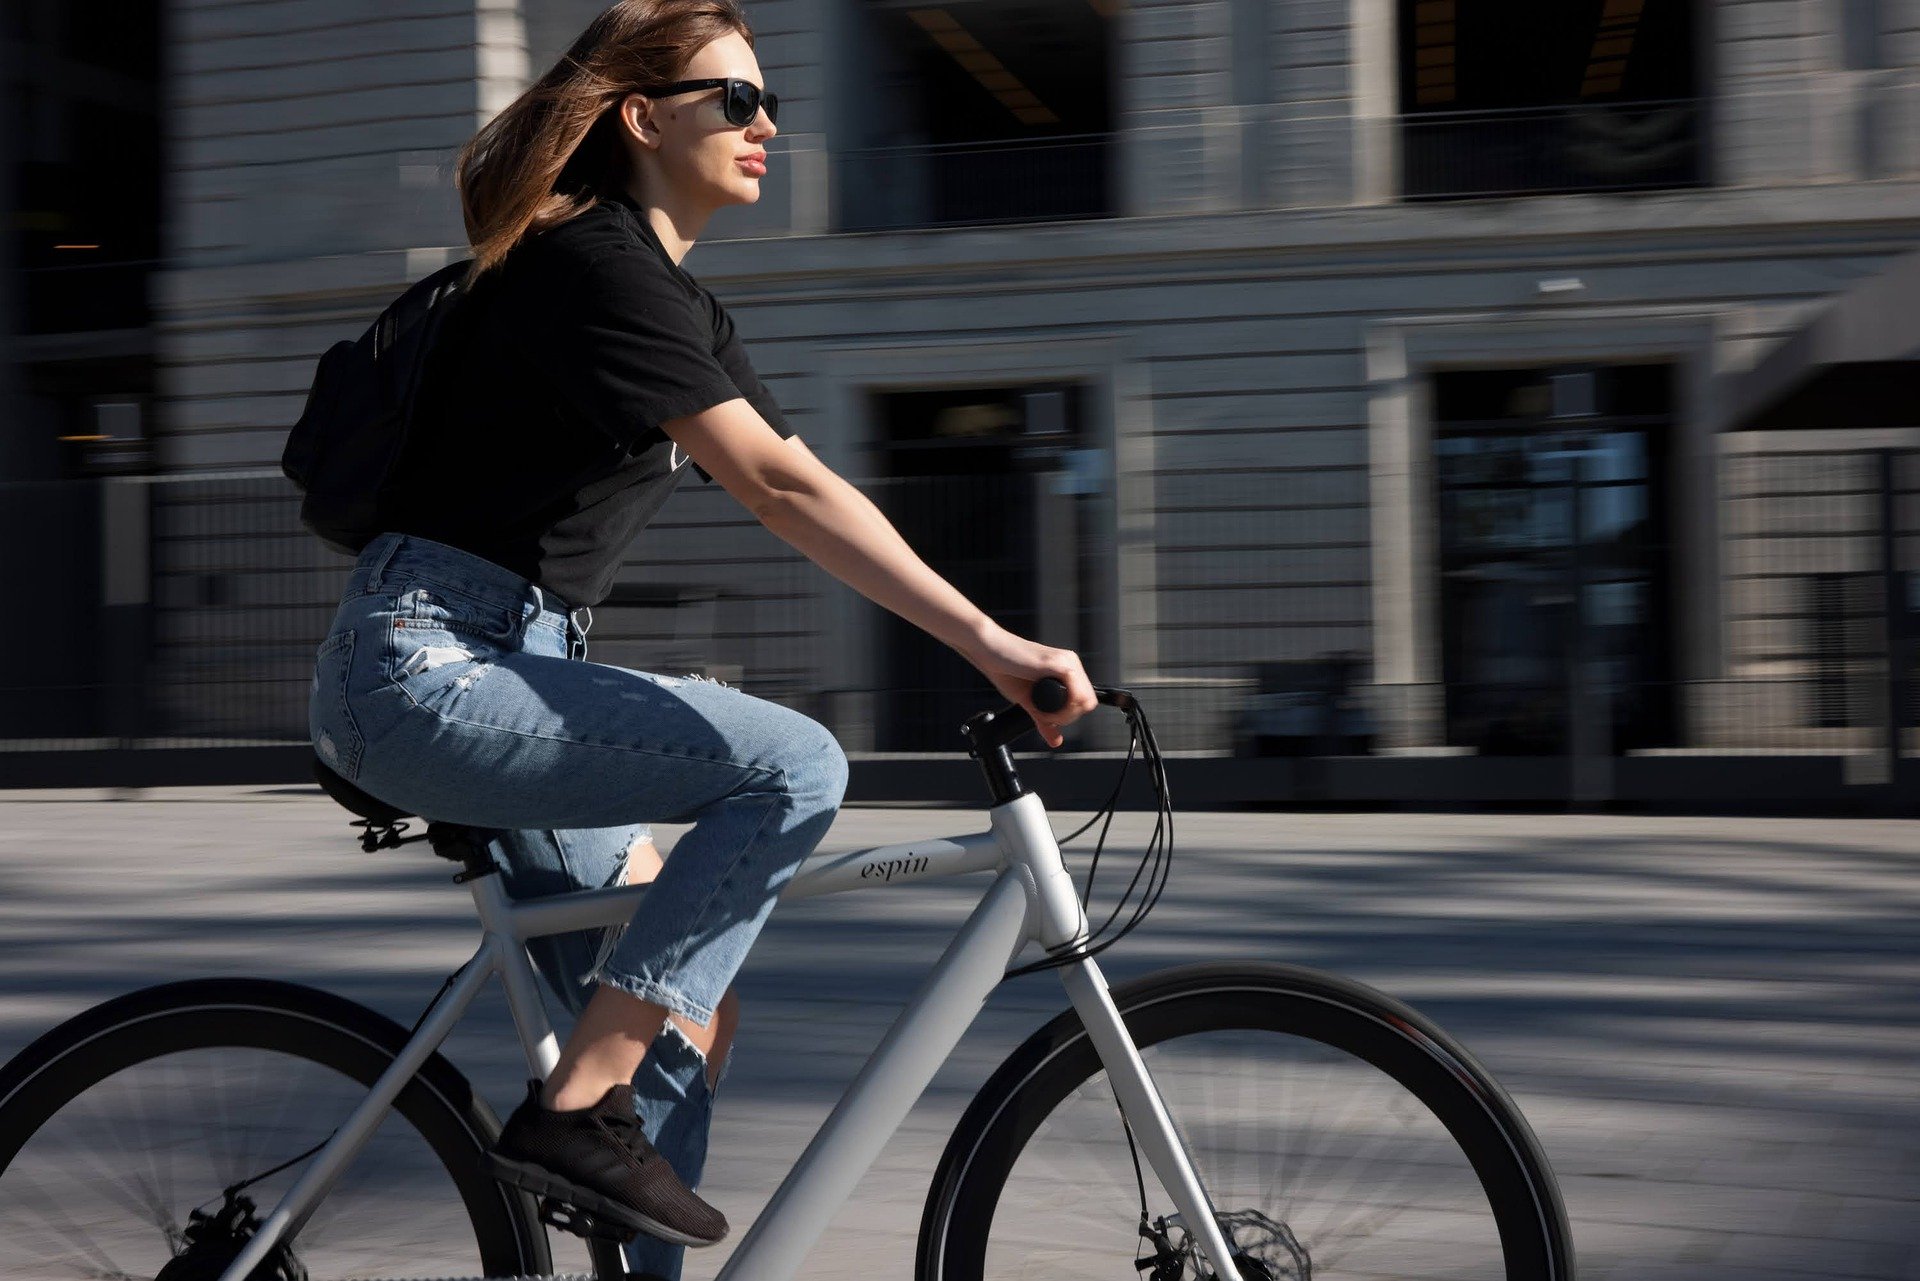 Olahraga sepeda sangat cocok dilakukan untuk seseorang yang memiliki kelebihan berat badan atau obesitas. (Pixabay)